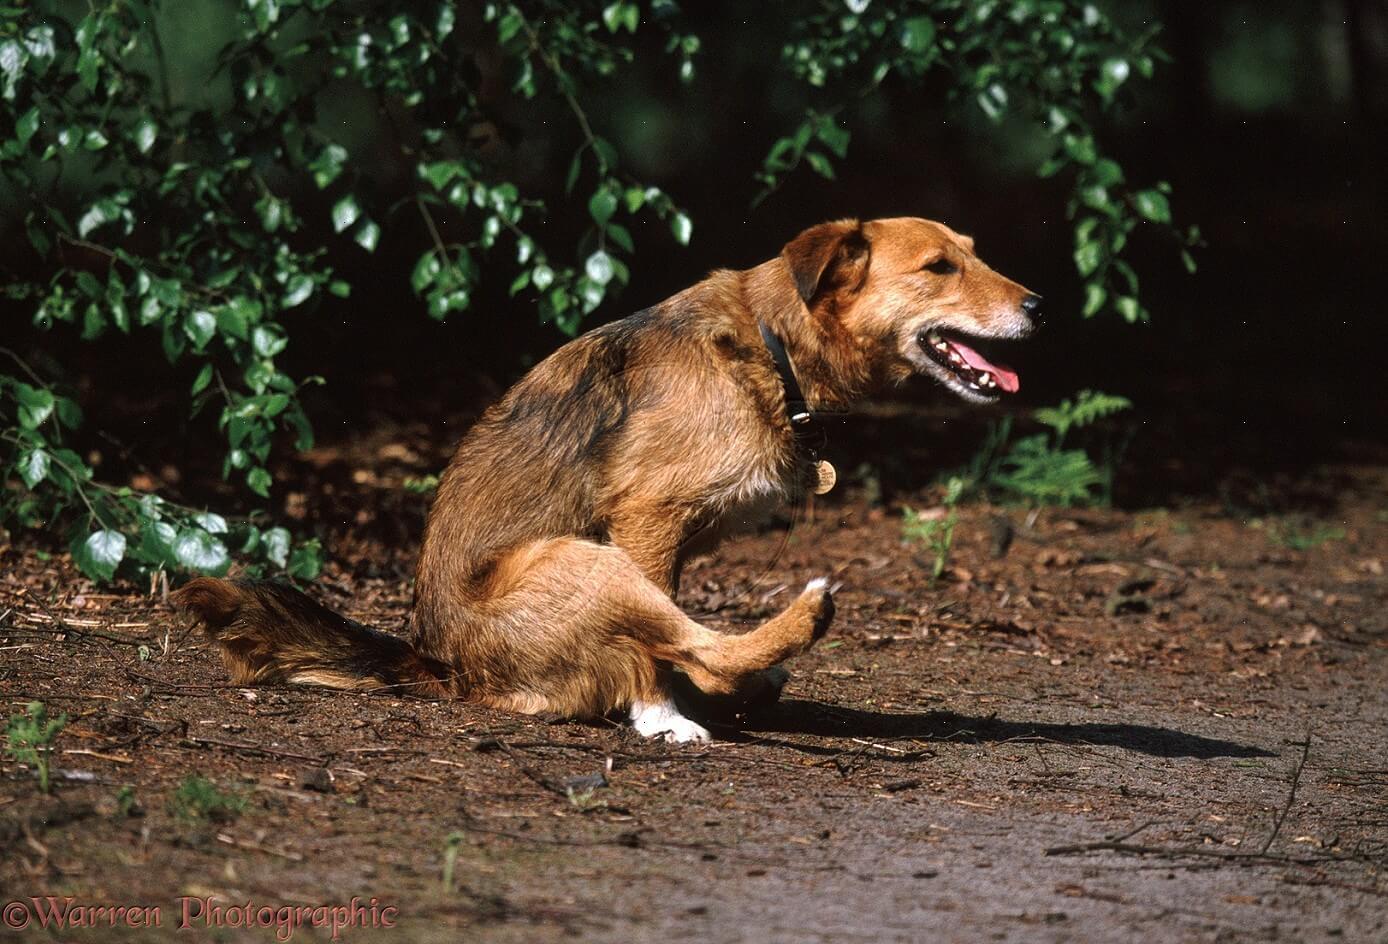 Szánkázás - Bűzmirigy-problémára utalhat, ha a kutya a földhöz dörzsöli a hátsóját